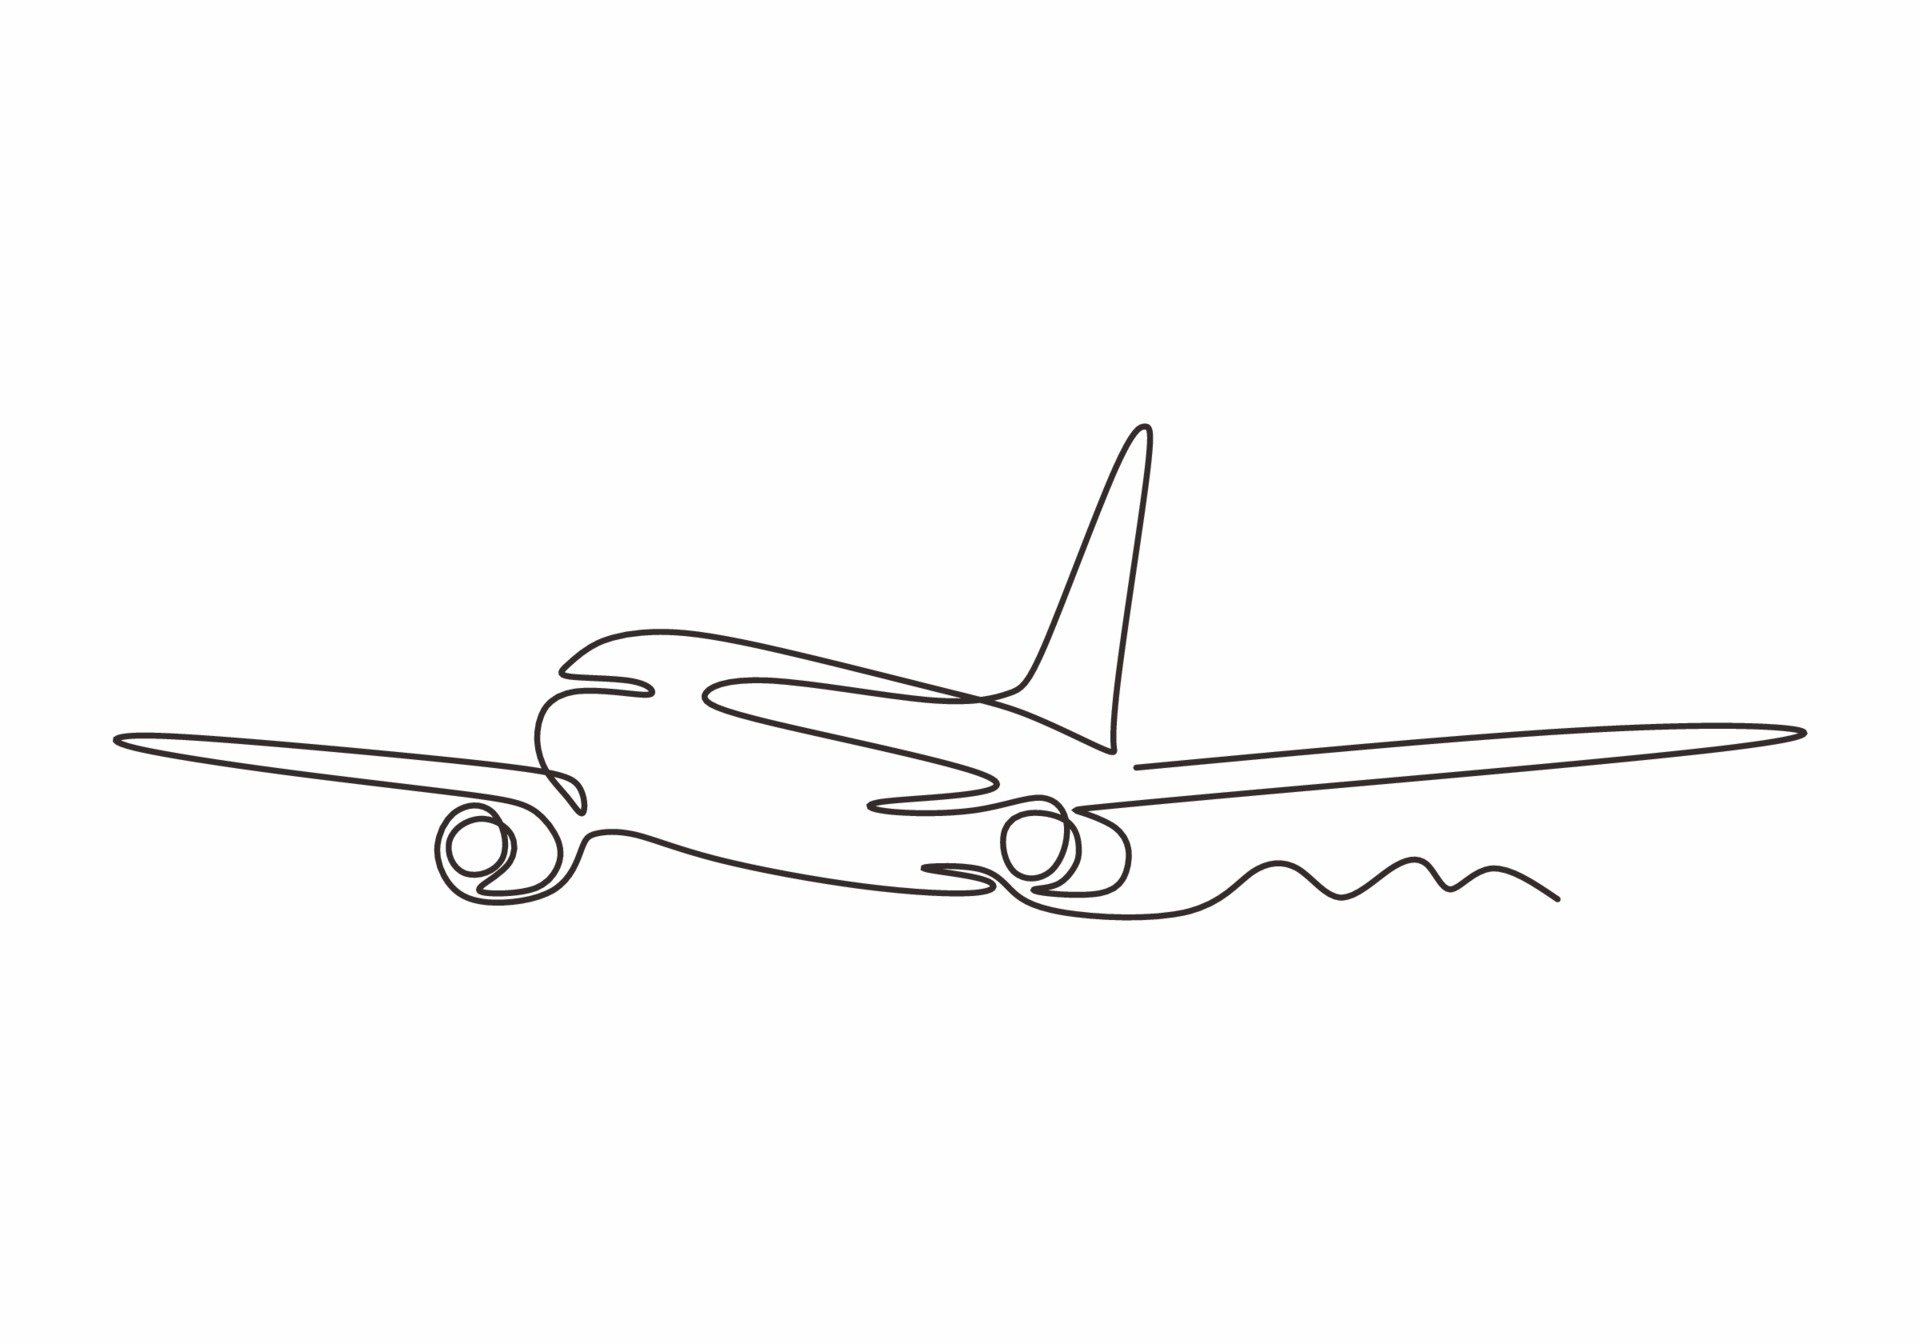 Минималистичный рисунок самолета